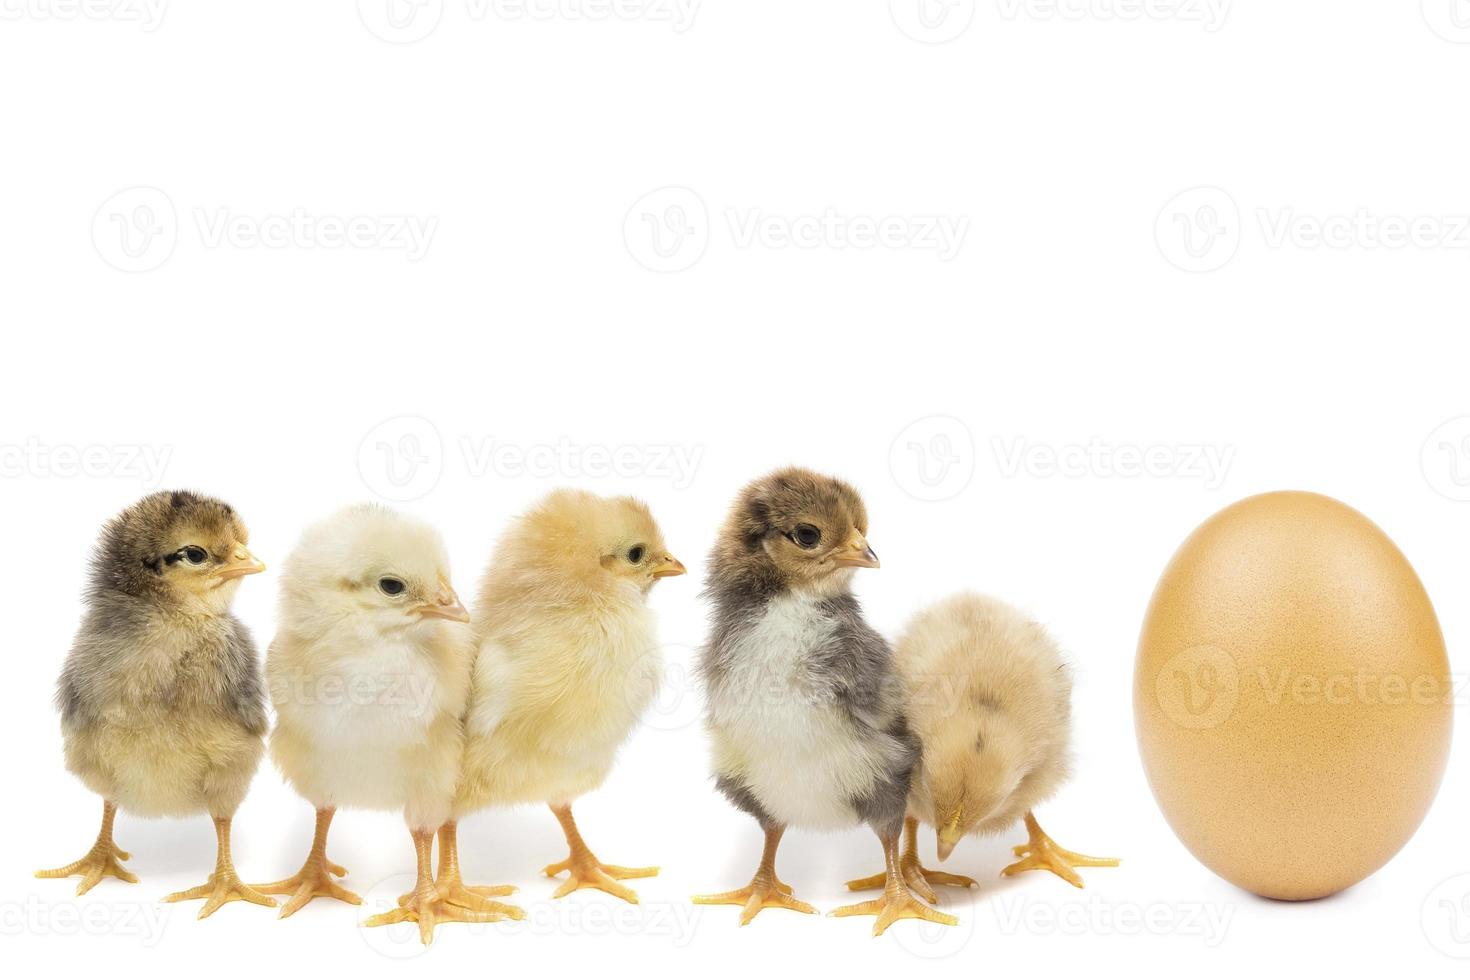 kyckling ägg på vit bakgrund foto